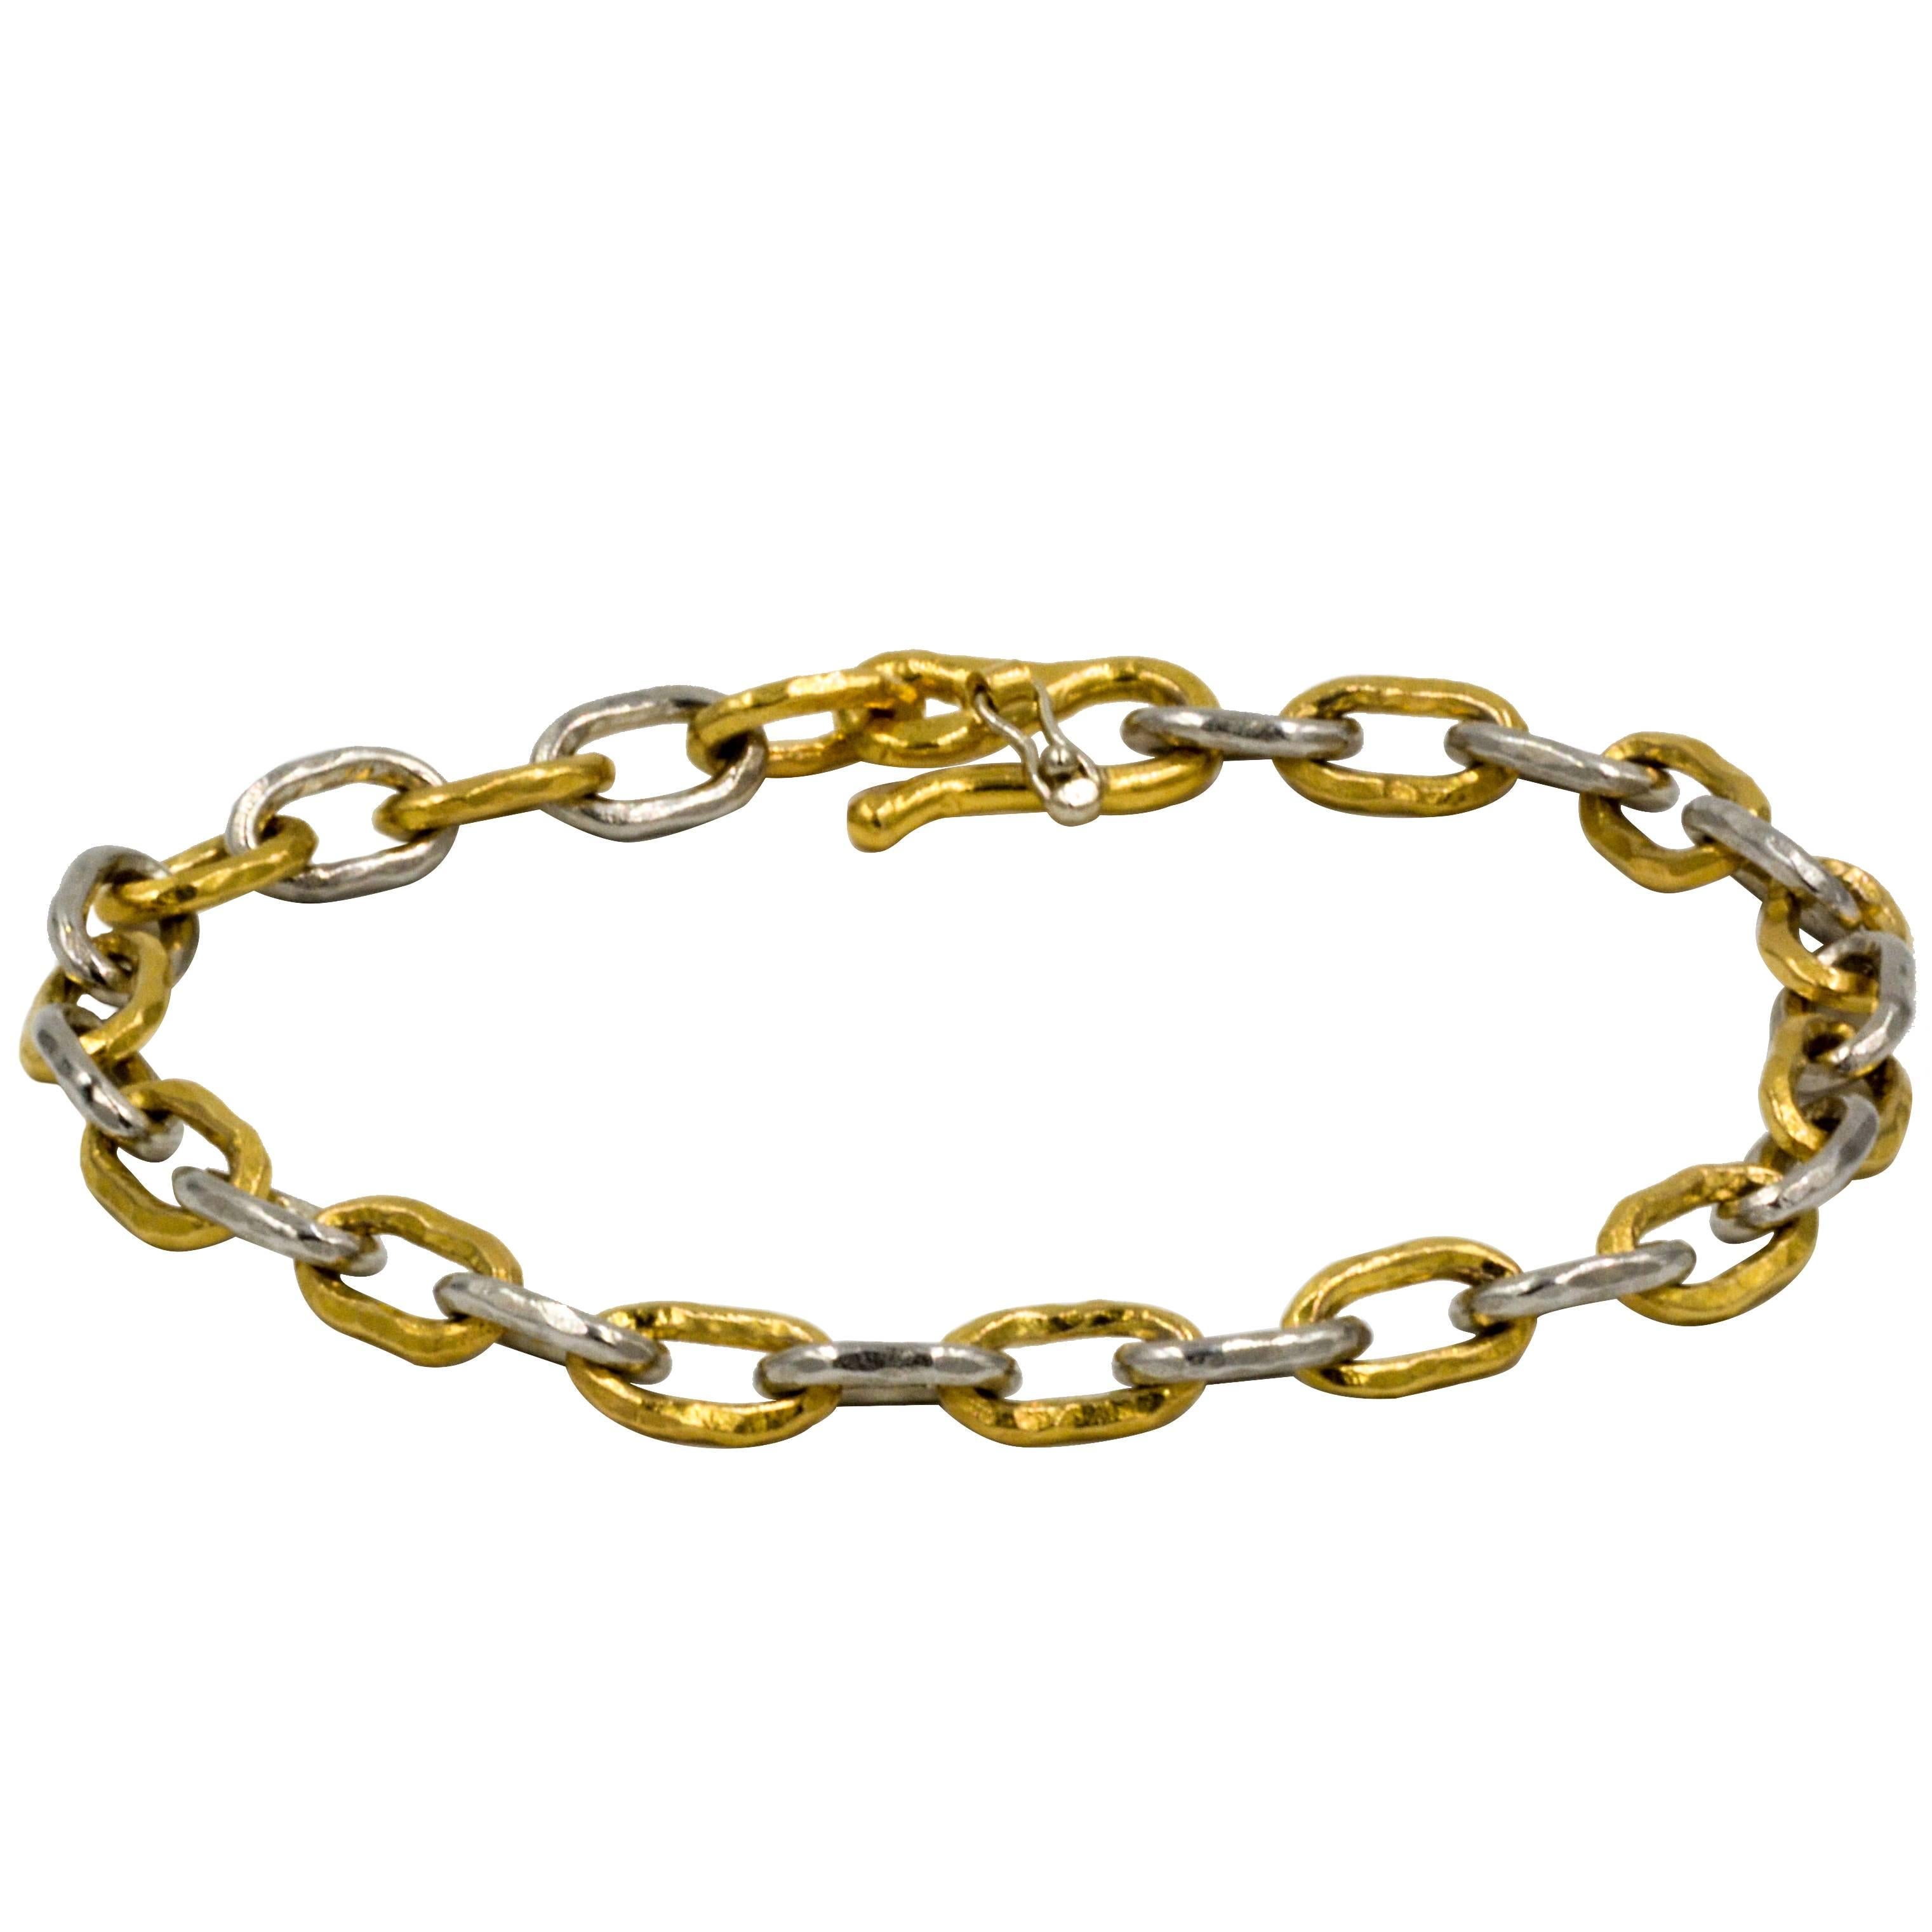 Jean Mahie 22 Karat Gold and Platinum Cadene Chain Bracelet